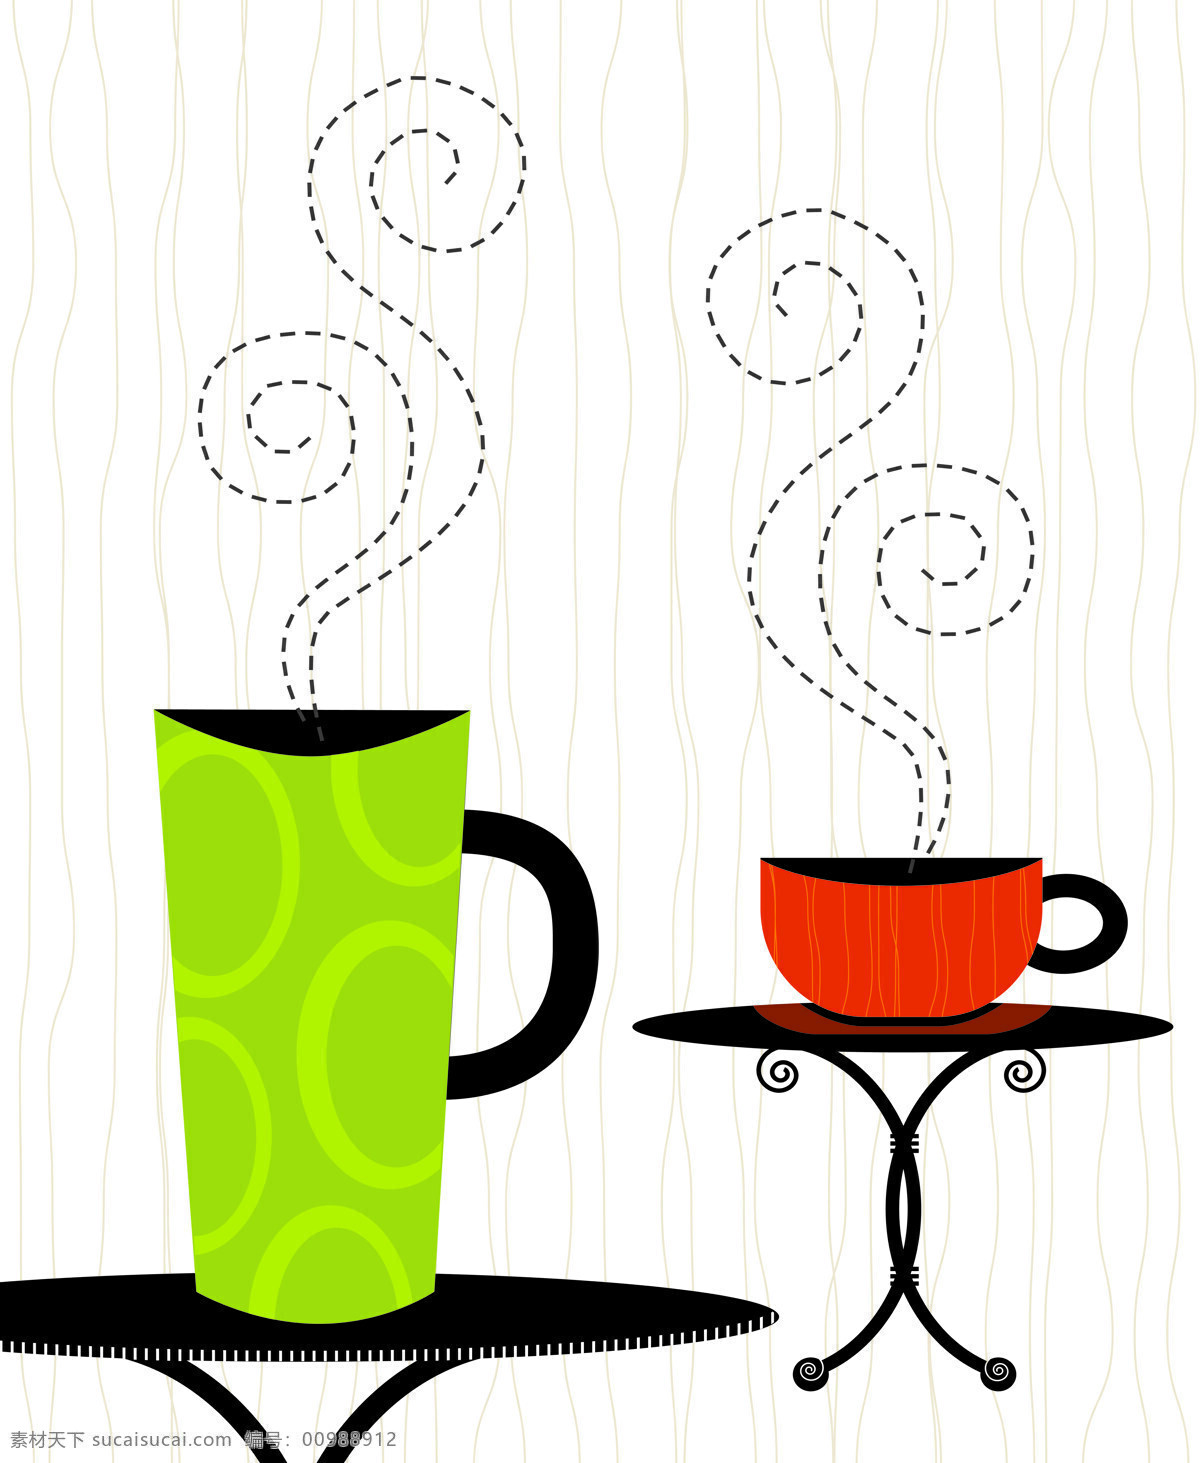 咖啡 杯子 黑色 红色 咖啡模板下载 线条 移门 咖啡设计素材 青黄色 桌子 矢量图 日常生活